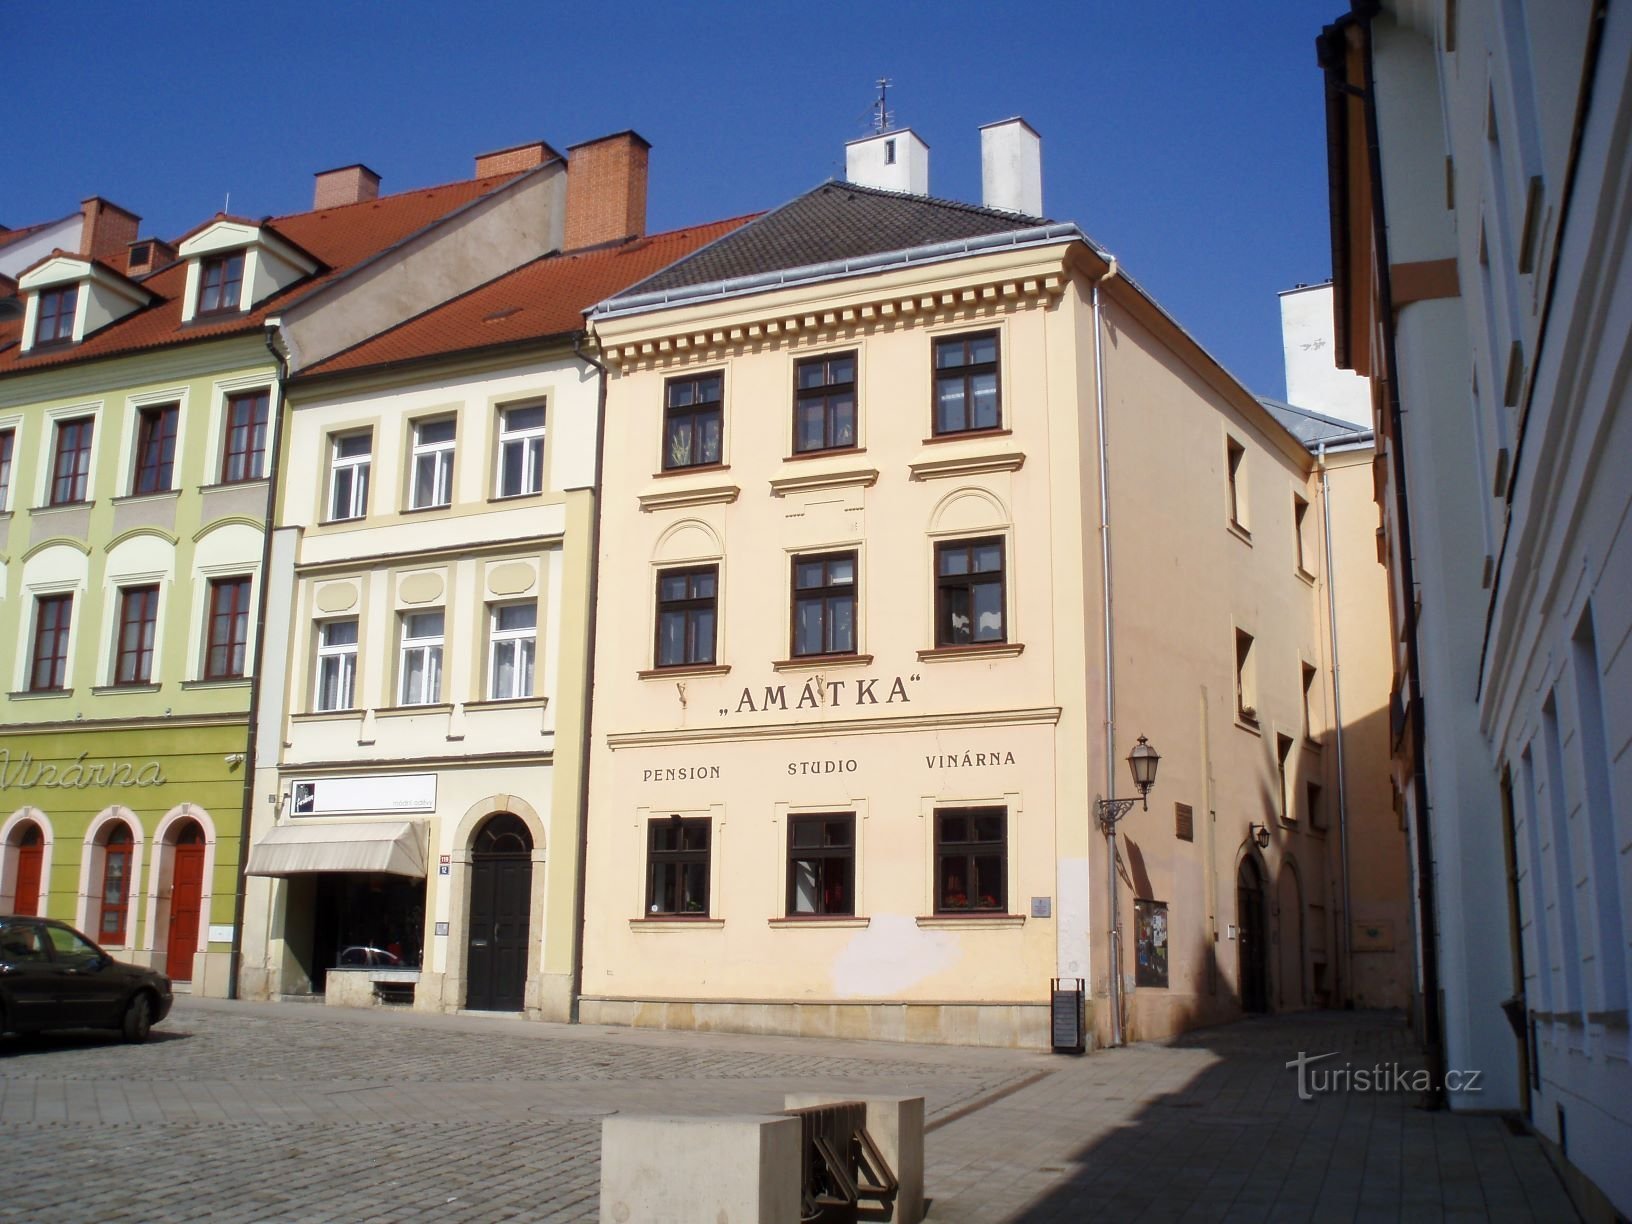 Malé náměstí čp. 119-120 (Hradec Králové, 23.3.2012)